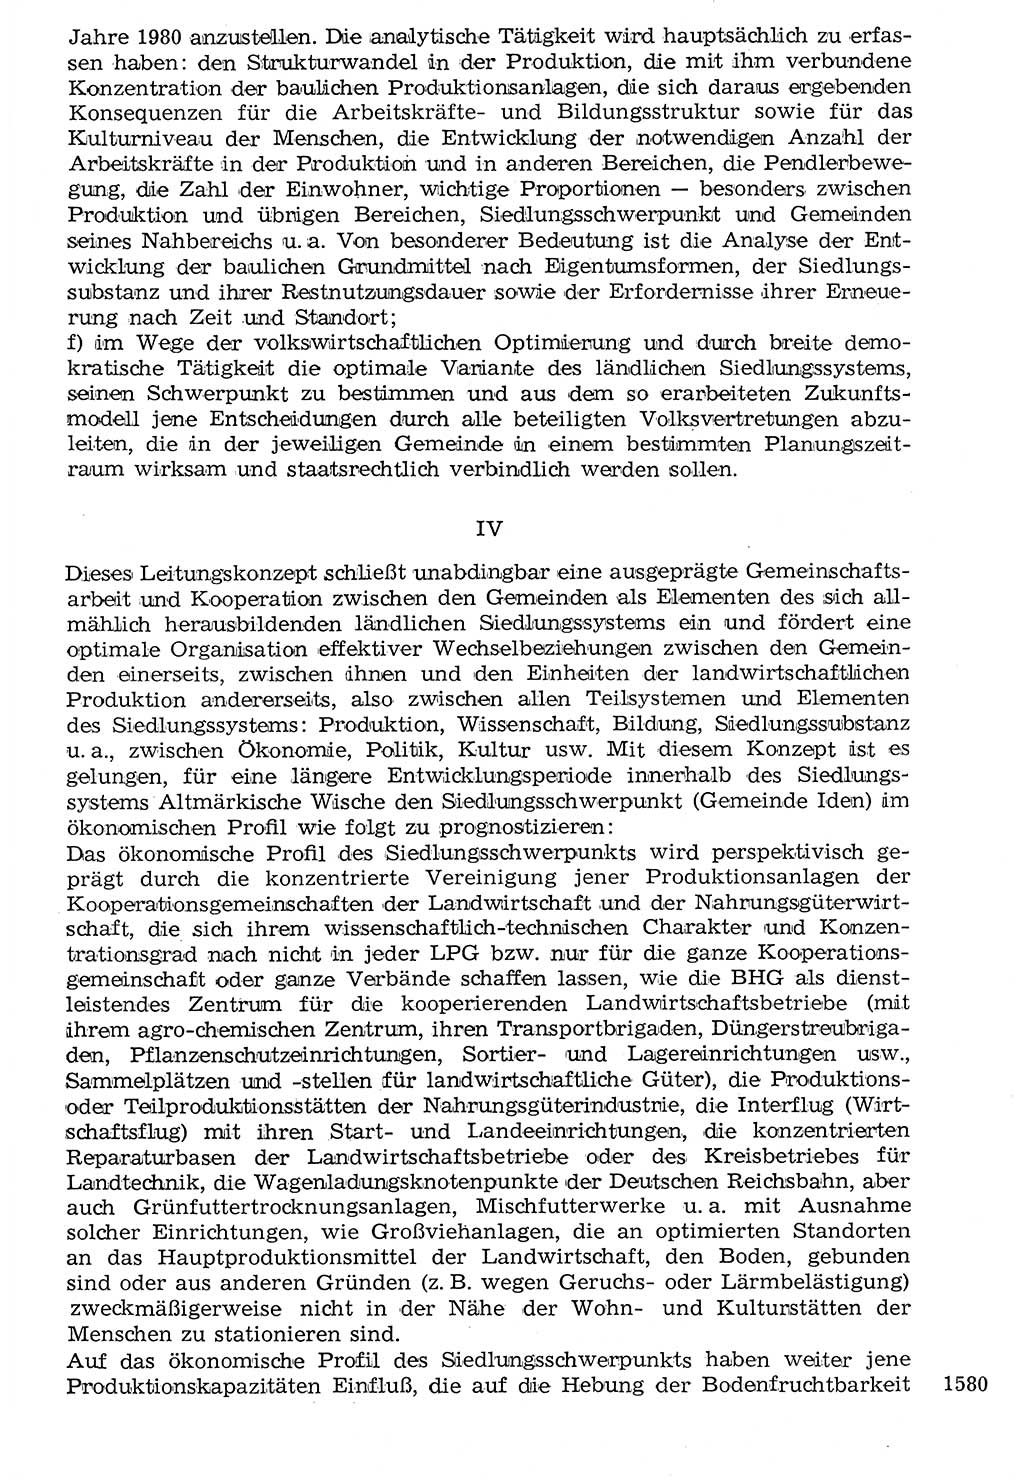 Staat und Recht (StuR), 17. Jahrgang [Deutsche Demokratische Republik (DDR)] 1968, Seite 1580 (StuR DDR 1968, S. 1580)